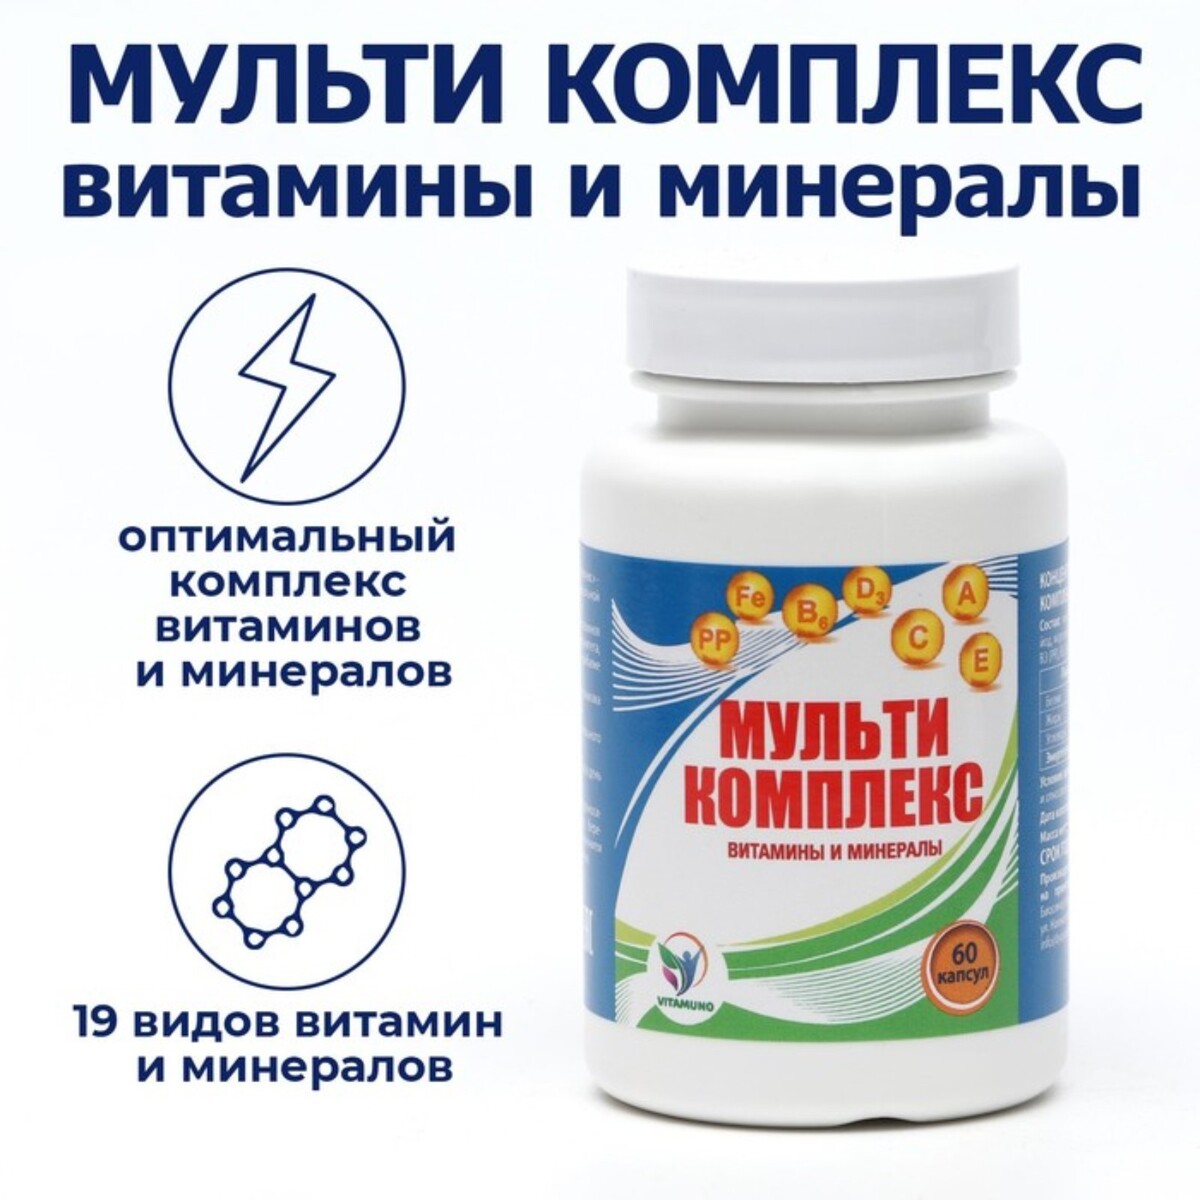 Мульти комплекс витамины и минералы vitamuno,60капсул витамины и бады фармацевт об их пользе и вреде